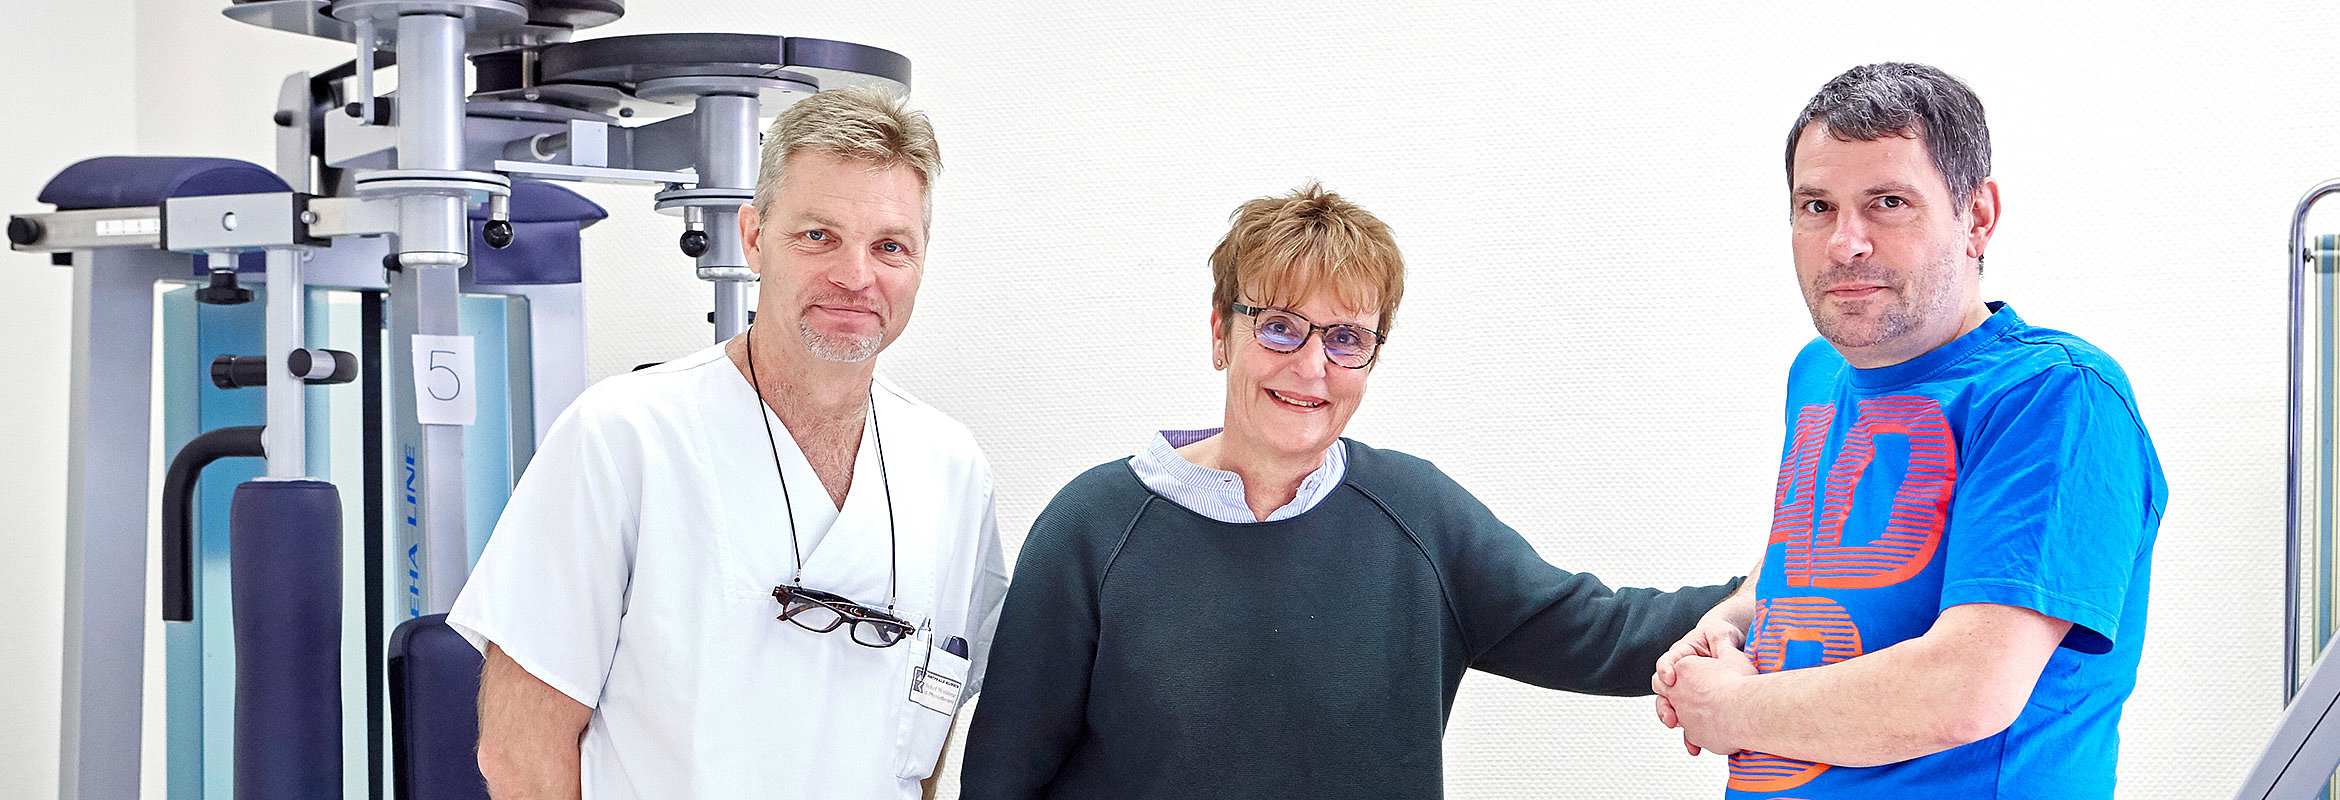 Waldmar Nickel, Susanne Schreiber und Andreas Kosma von der Physiotherapie in Kaiserslautern